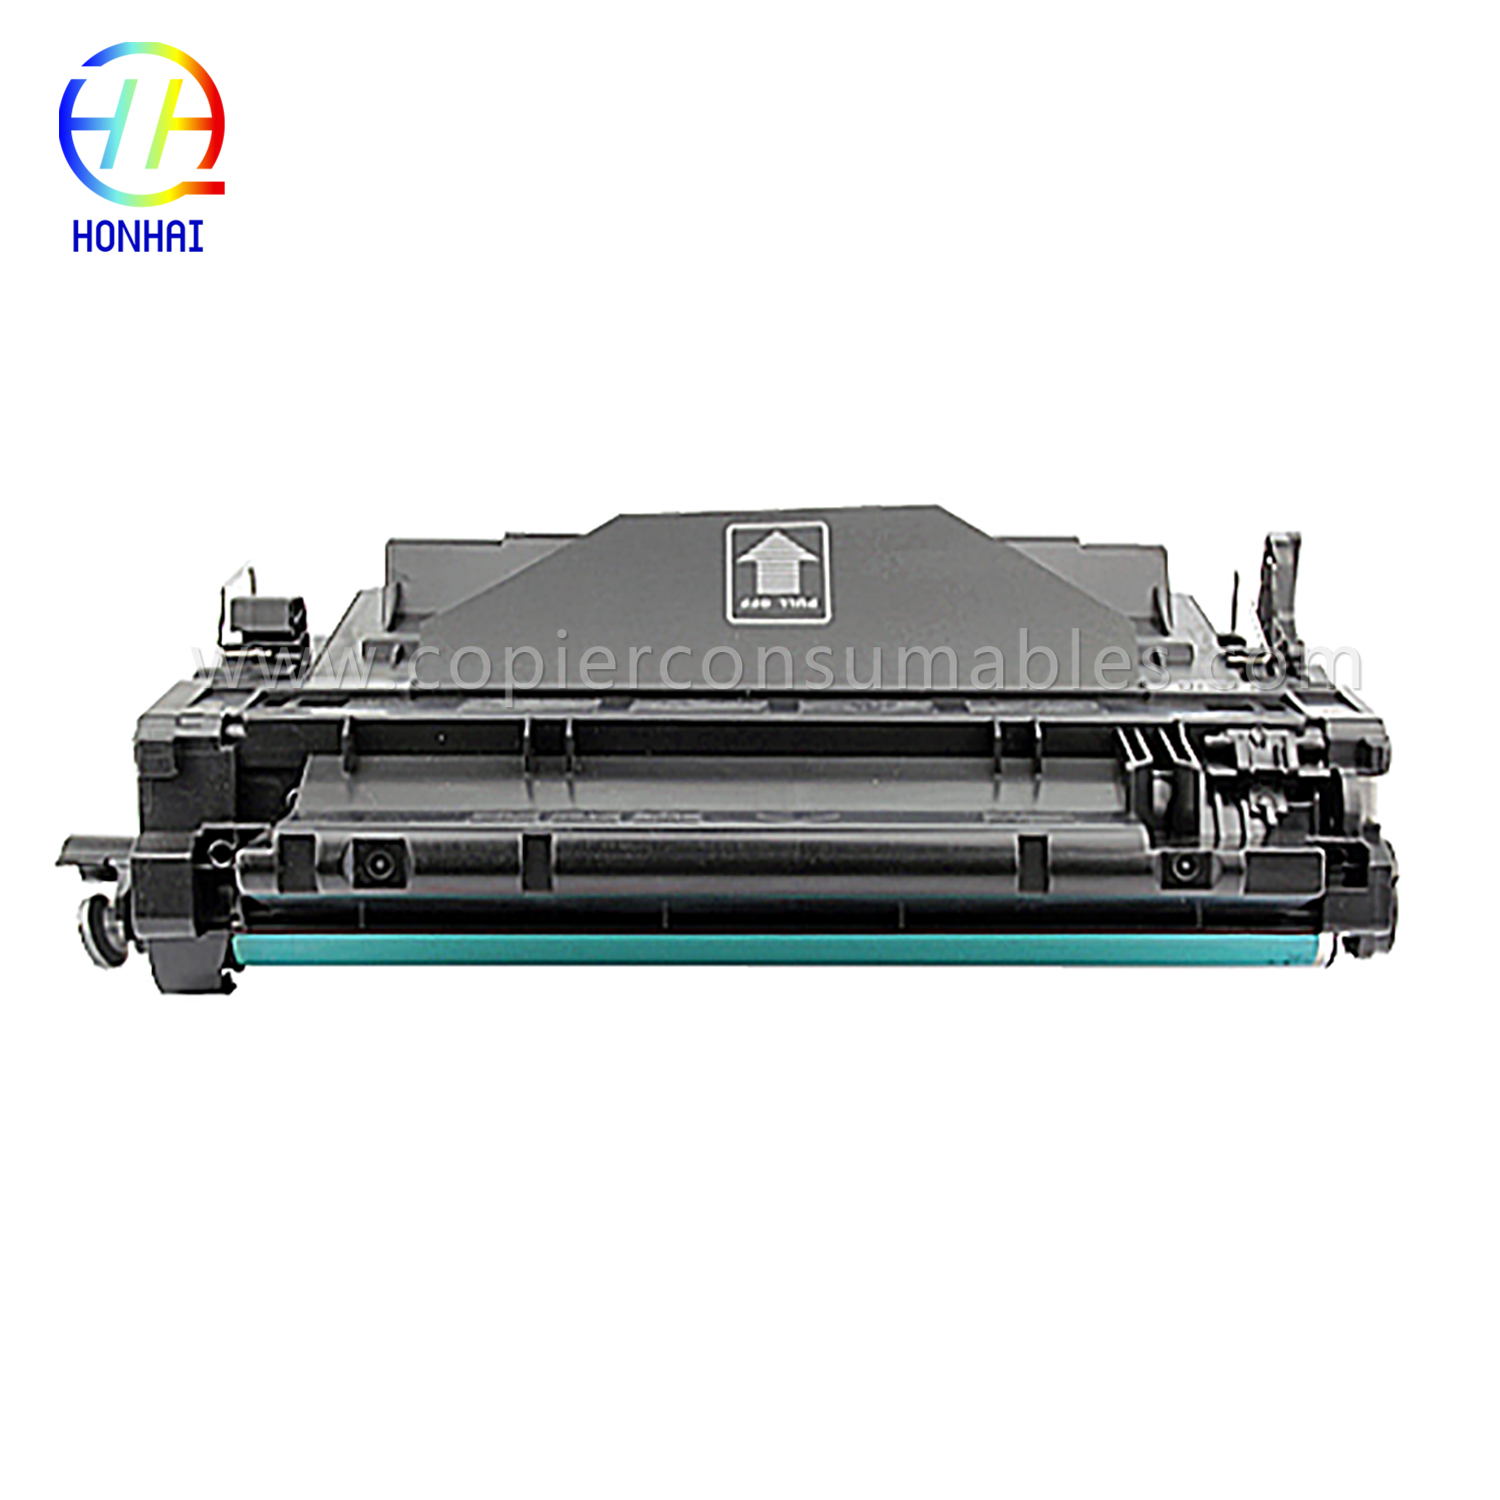 Cartușe de toner color HP LaserJet LaserJet Pro MFP M521dn Enterprise P3015 (CE255X) -1 (1) 拷贝